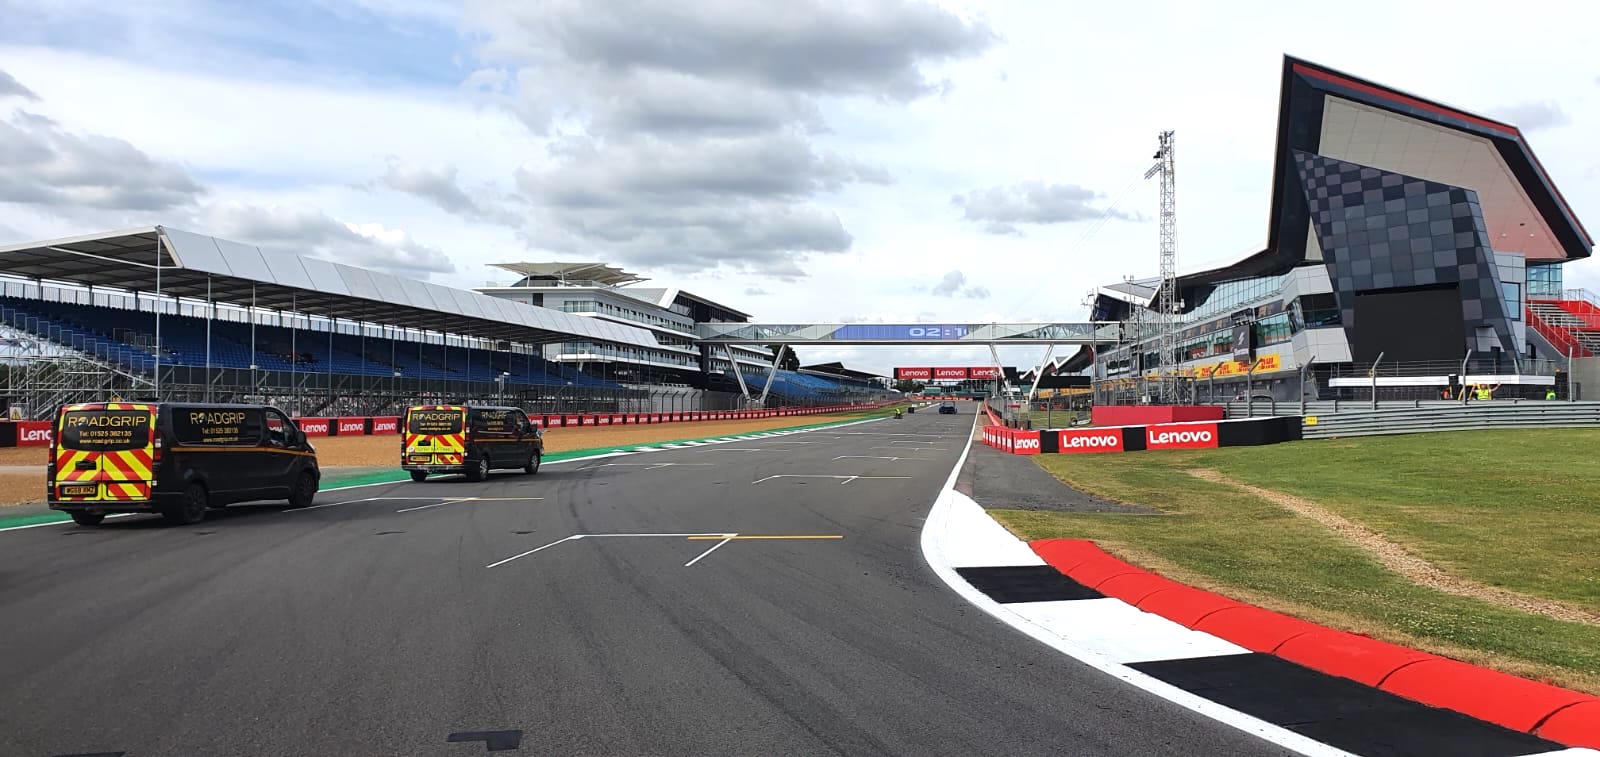 Track Marking, Silverstone F1, 2022 - Roadgrip